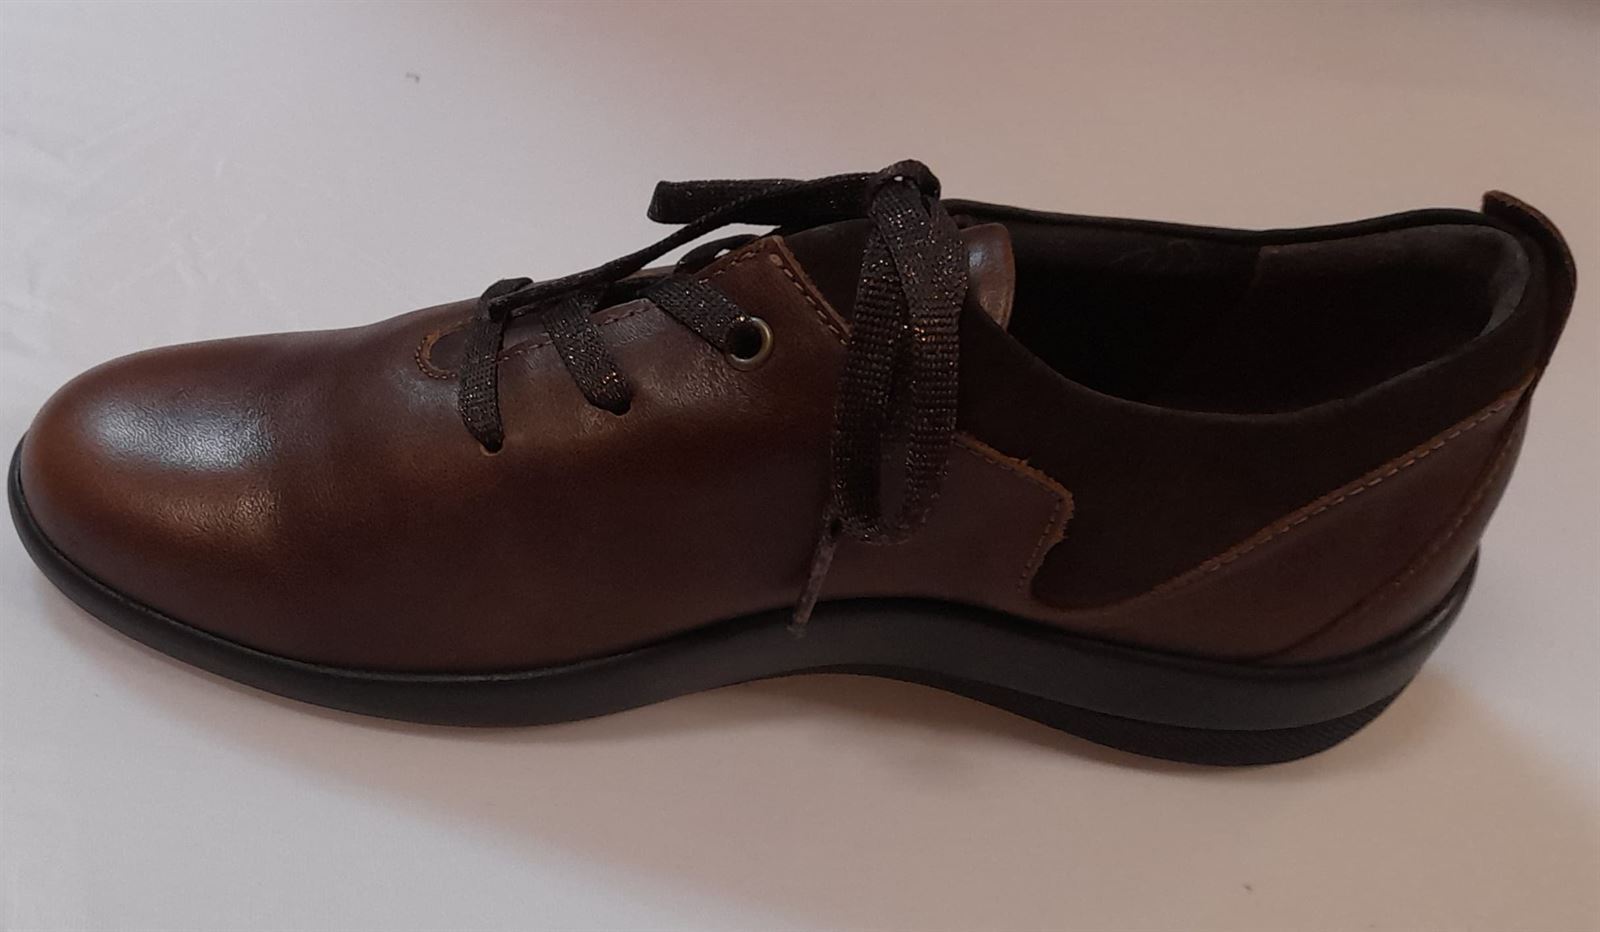 Zapato marrón cordones - Imagen 4